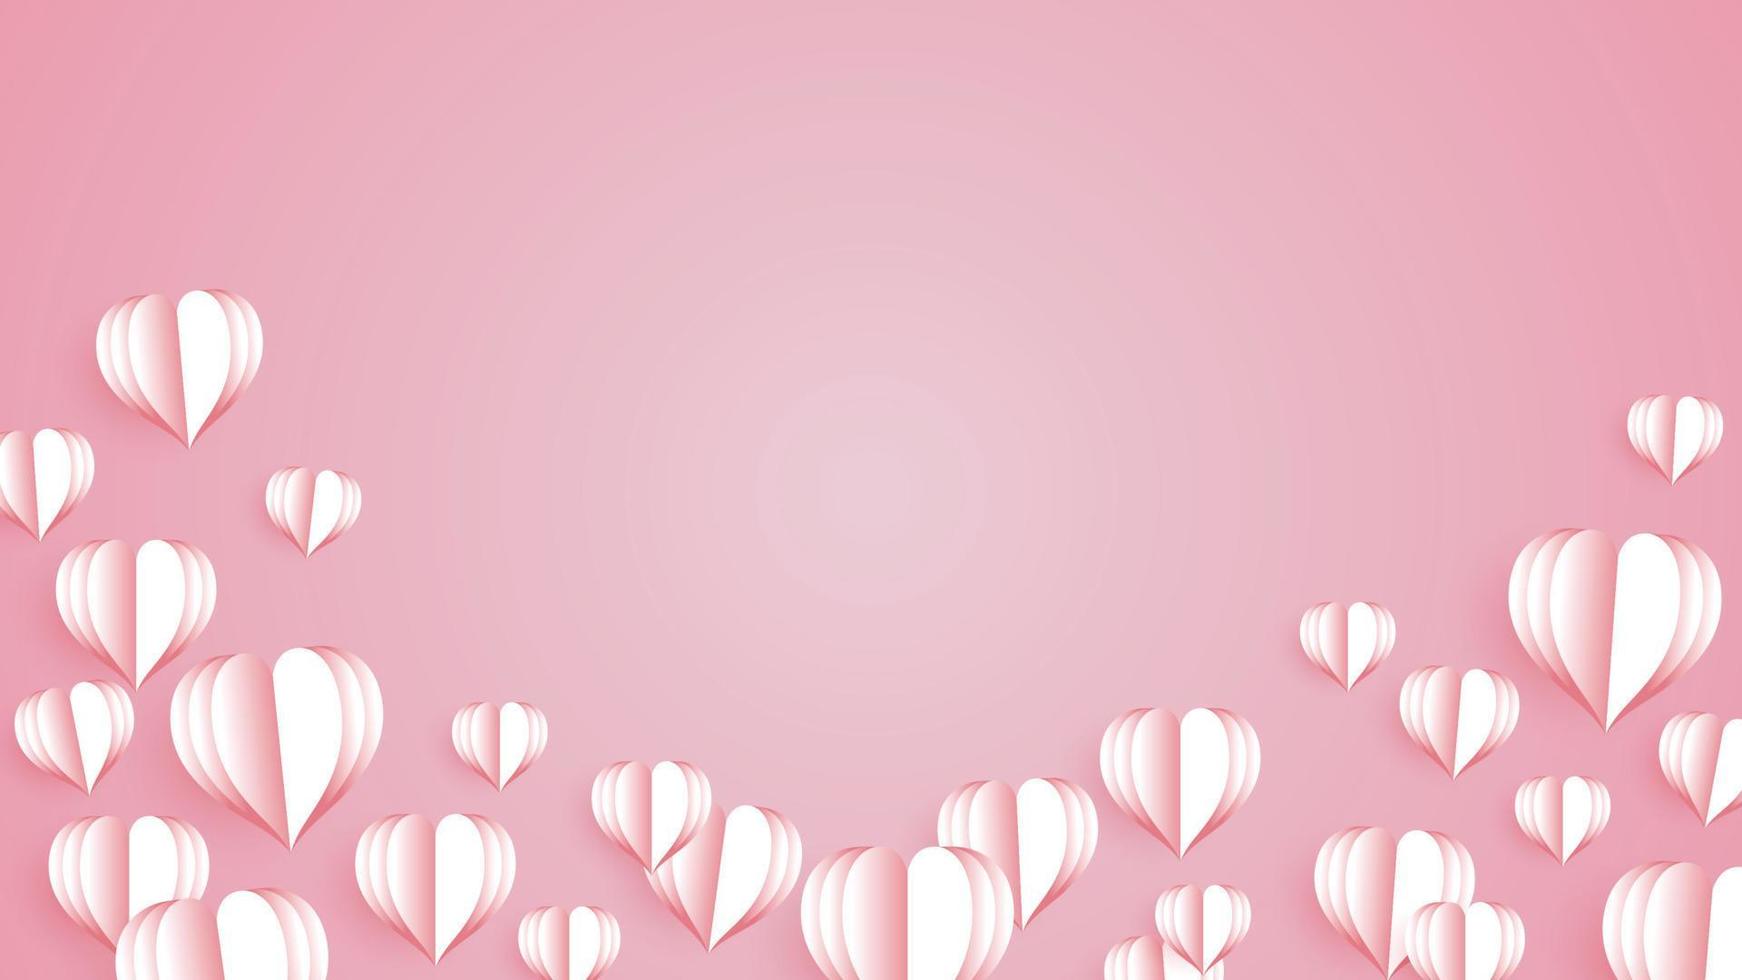 feliz día de San Valentín. elementos de papel en forma de corazón volando sobre fondo rosa. vector